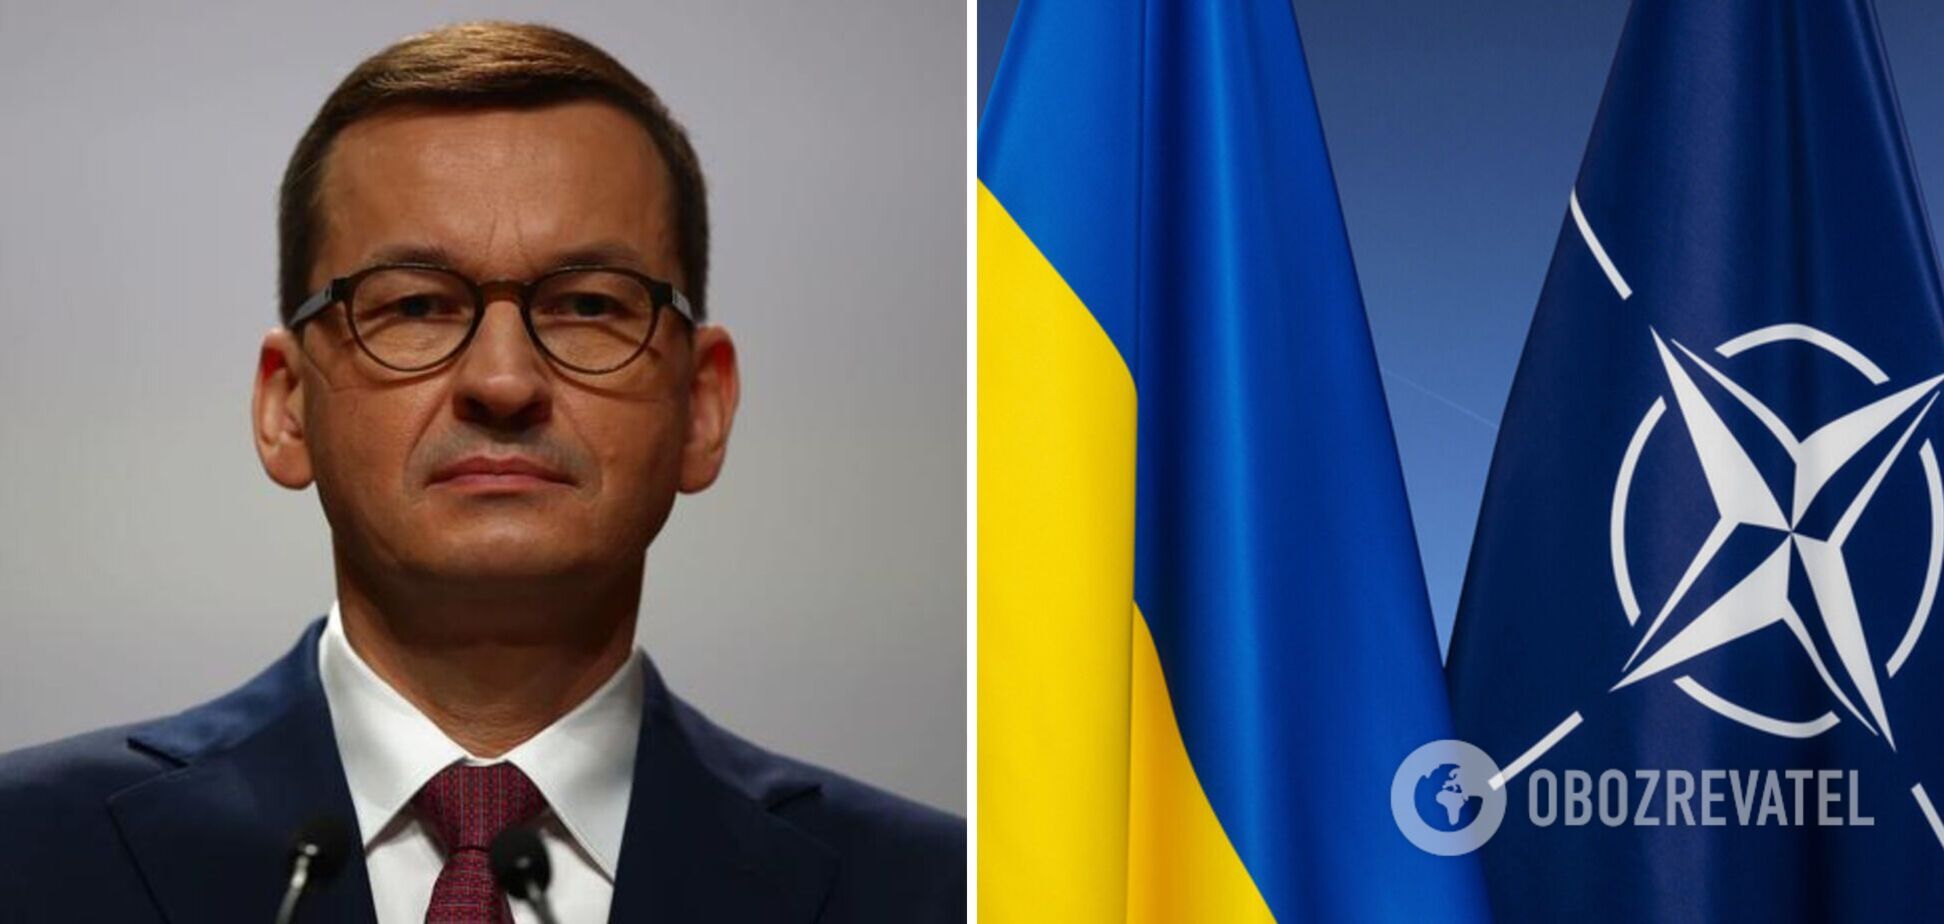 Украине нужны гарантии безопасности и ускоренное вступление в НАТО, – премьер Польши